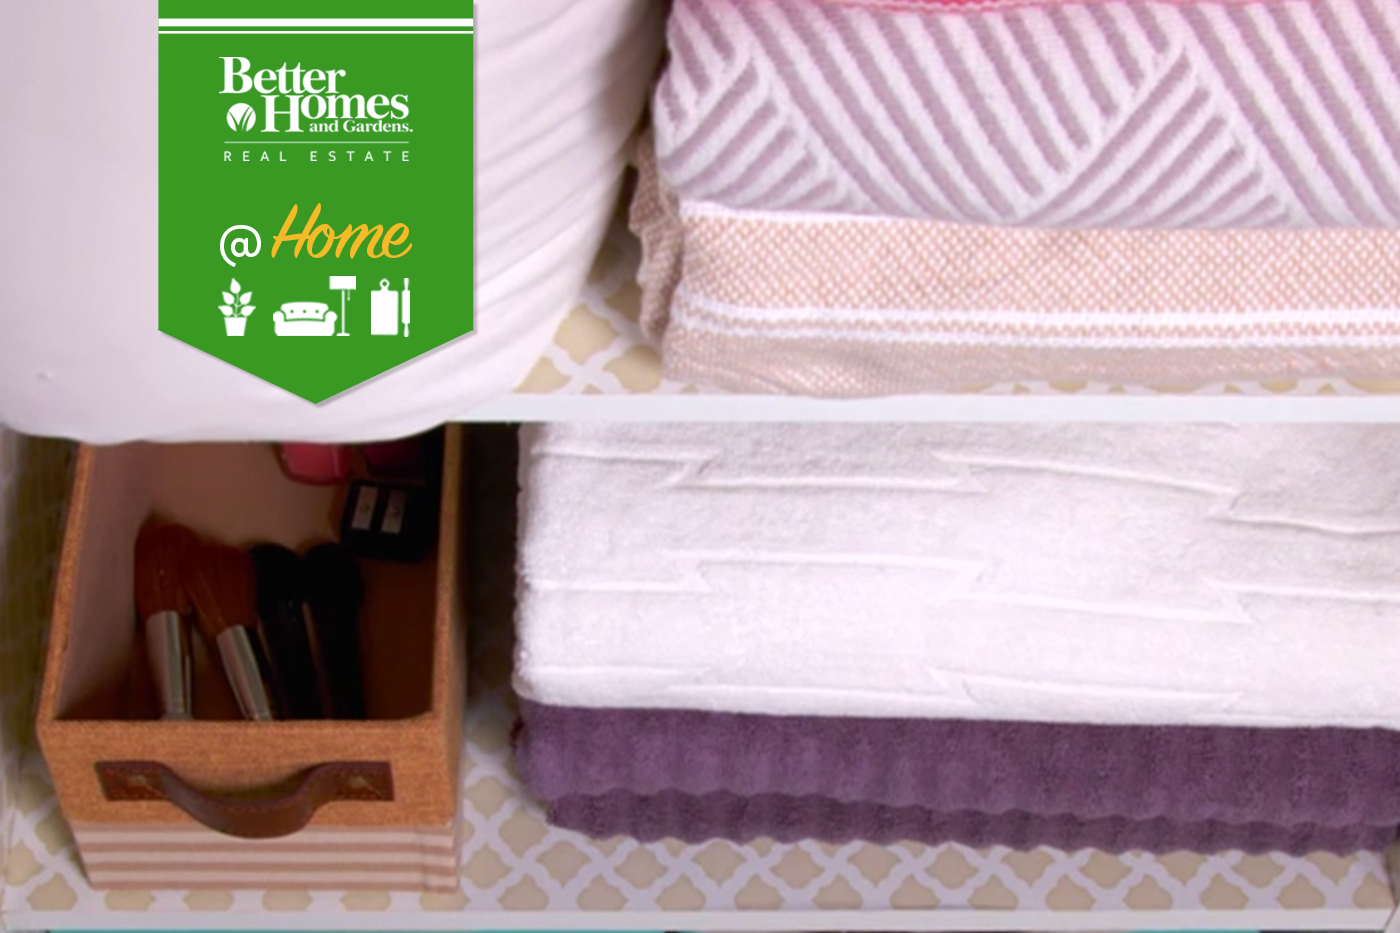 How to Organize Your Linen Closet - bhgrelife.com